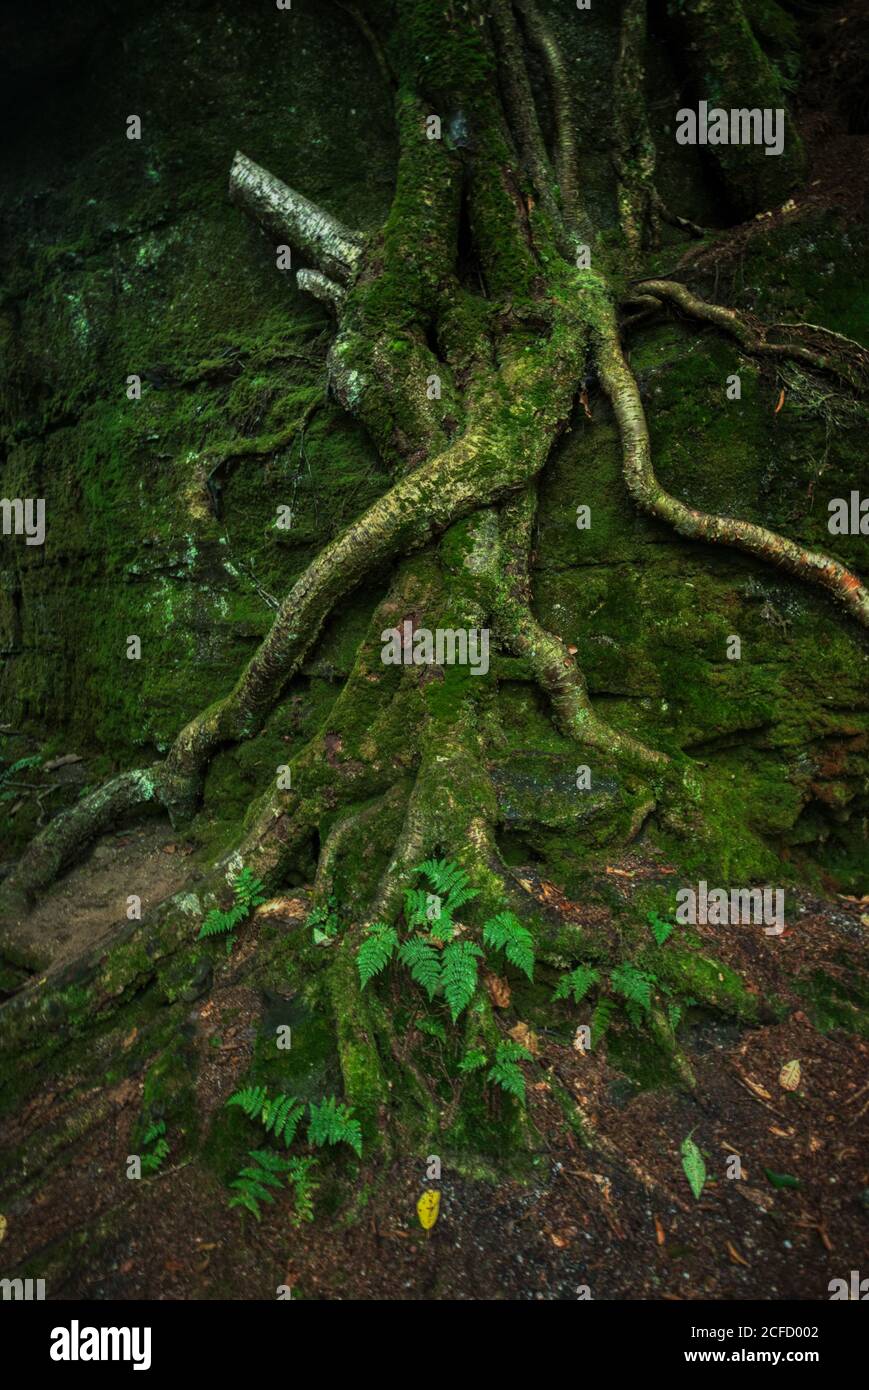 Panama Rocks Scenic Park, Condado de Chautauqua, Nueva York, EE.UU. - un antiguo bosque petrificado de conglomerado de cuarzo Foto de stock